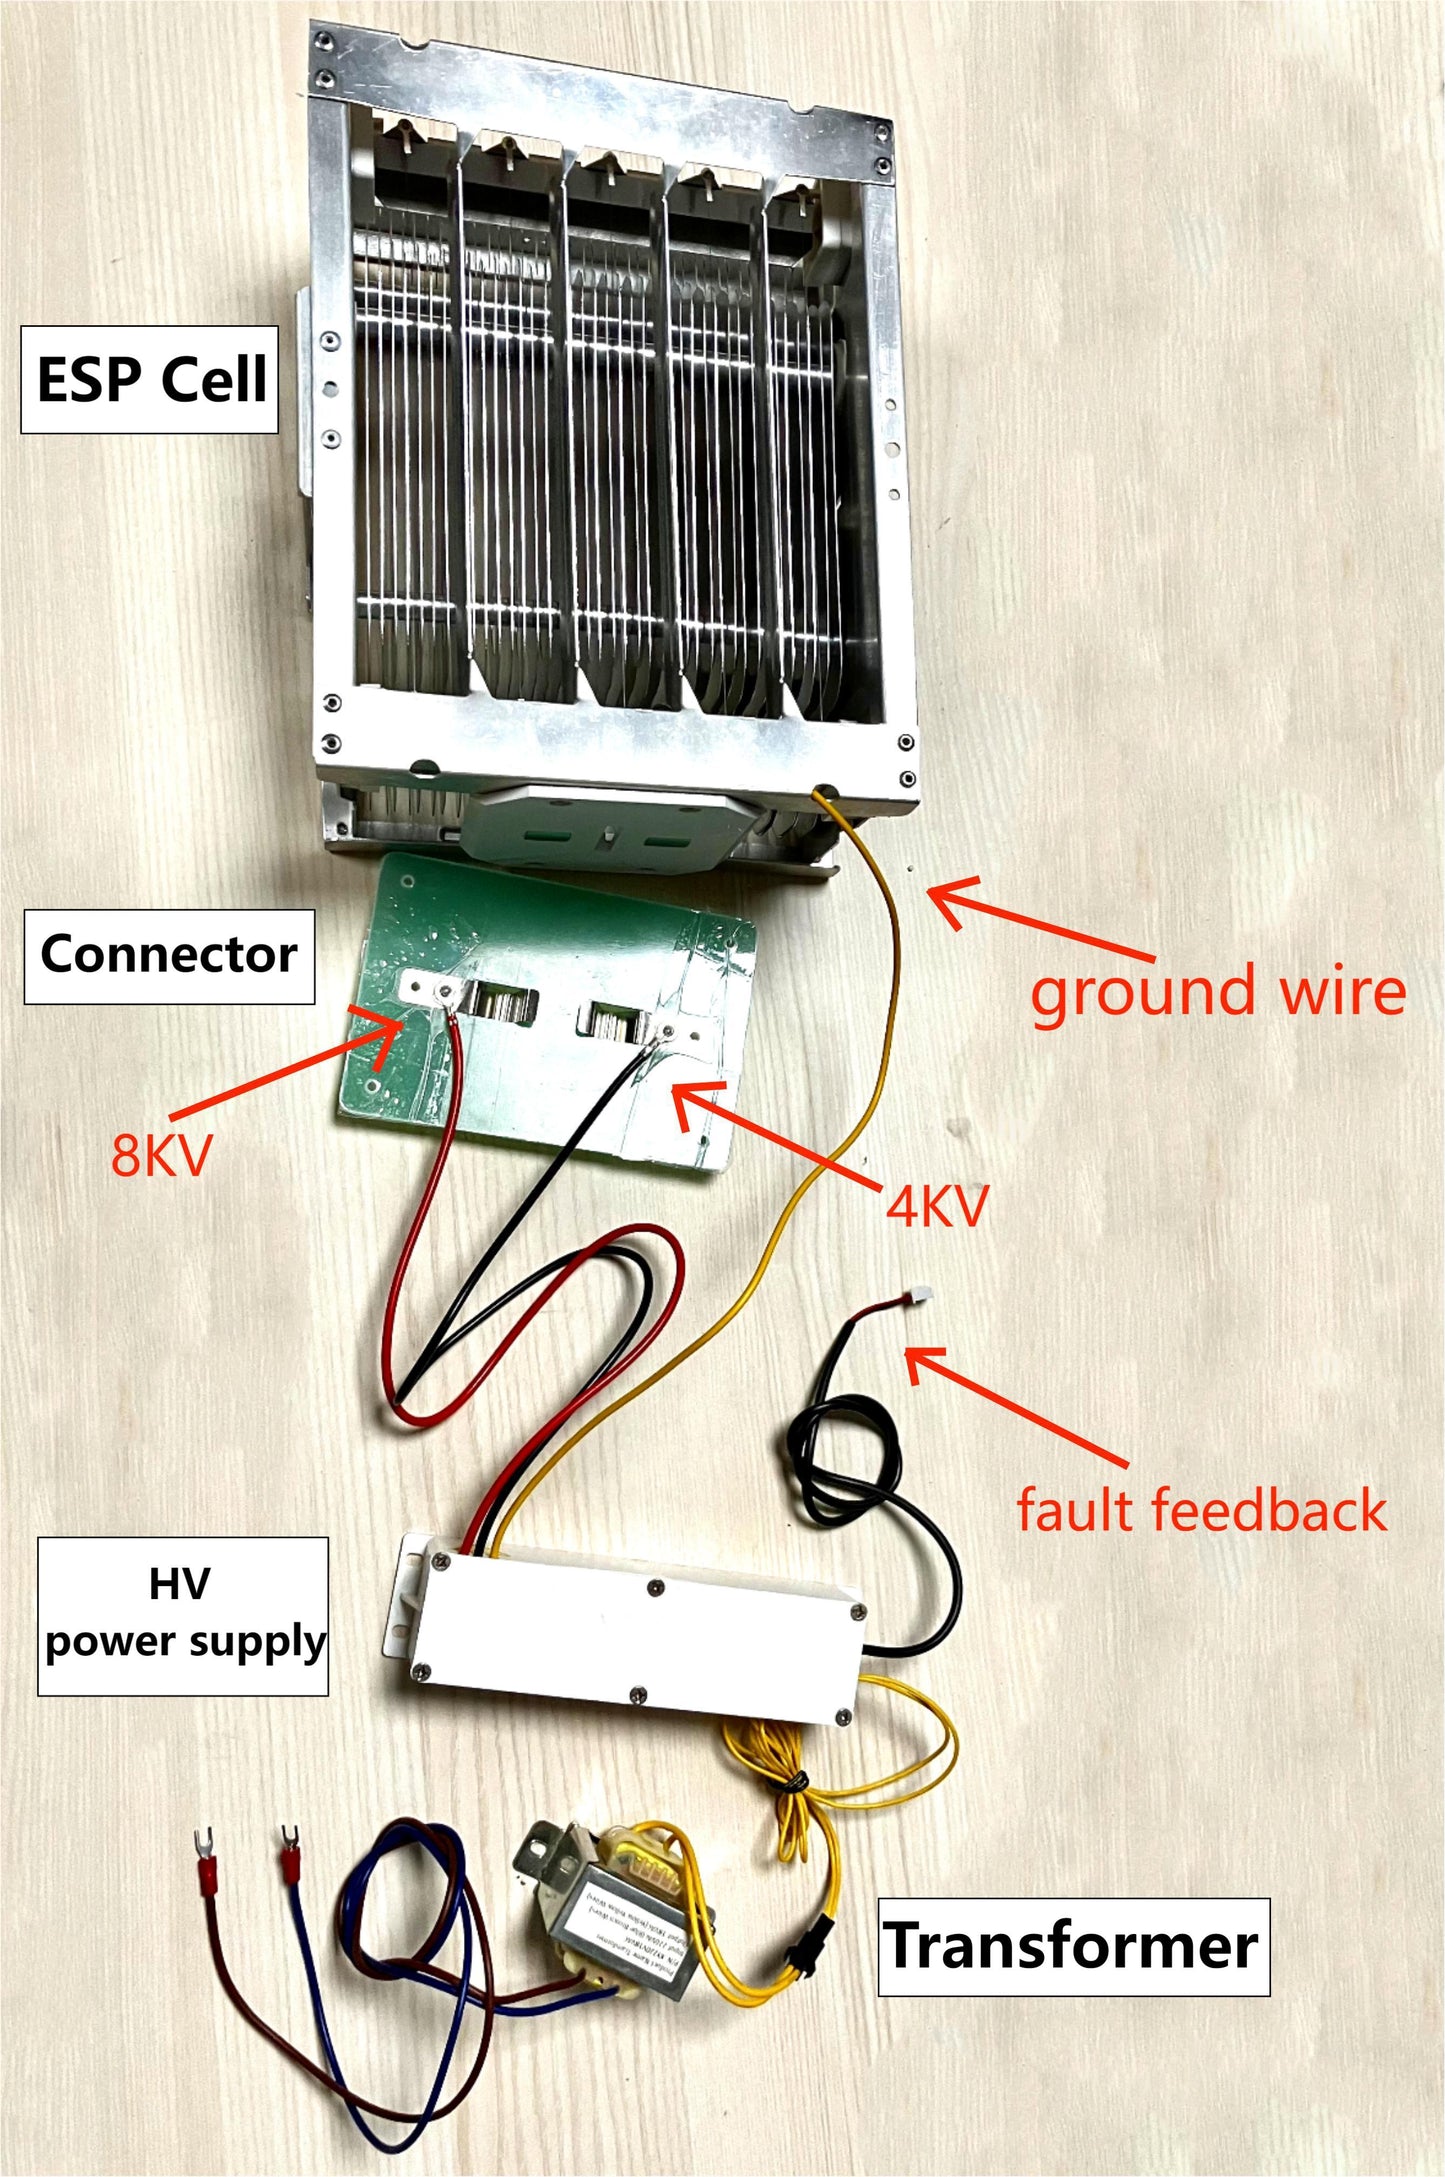 2W High Voltage Power Supply for ESP Unit KYOG12V04